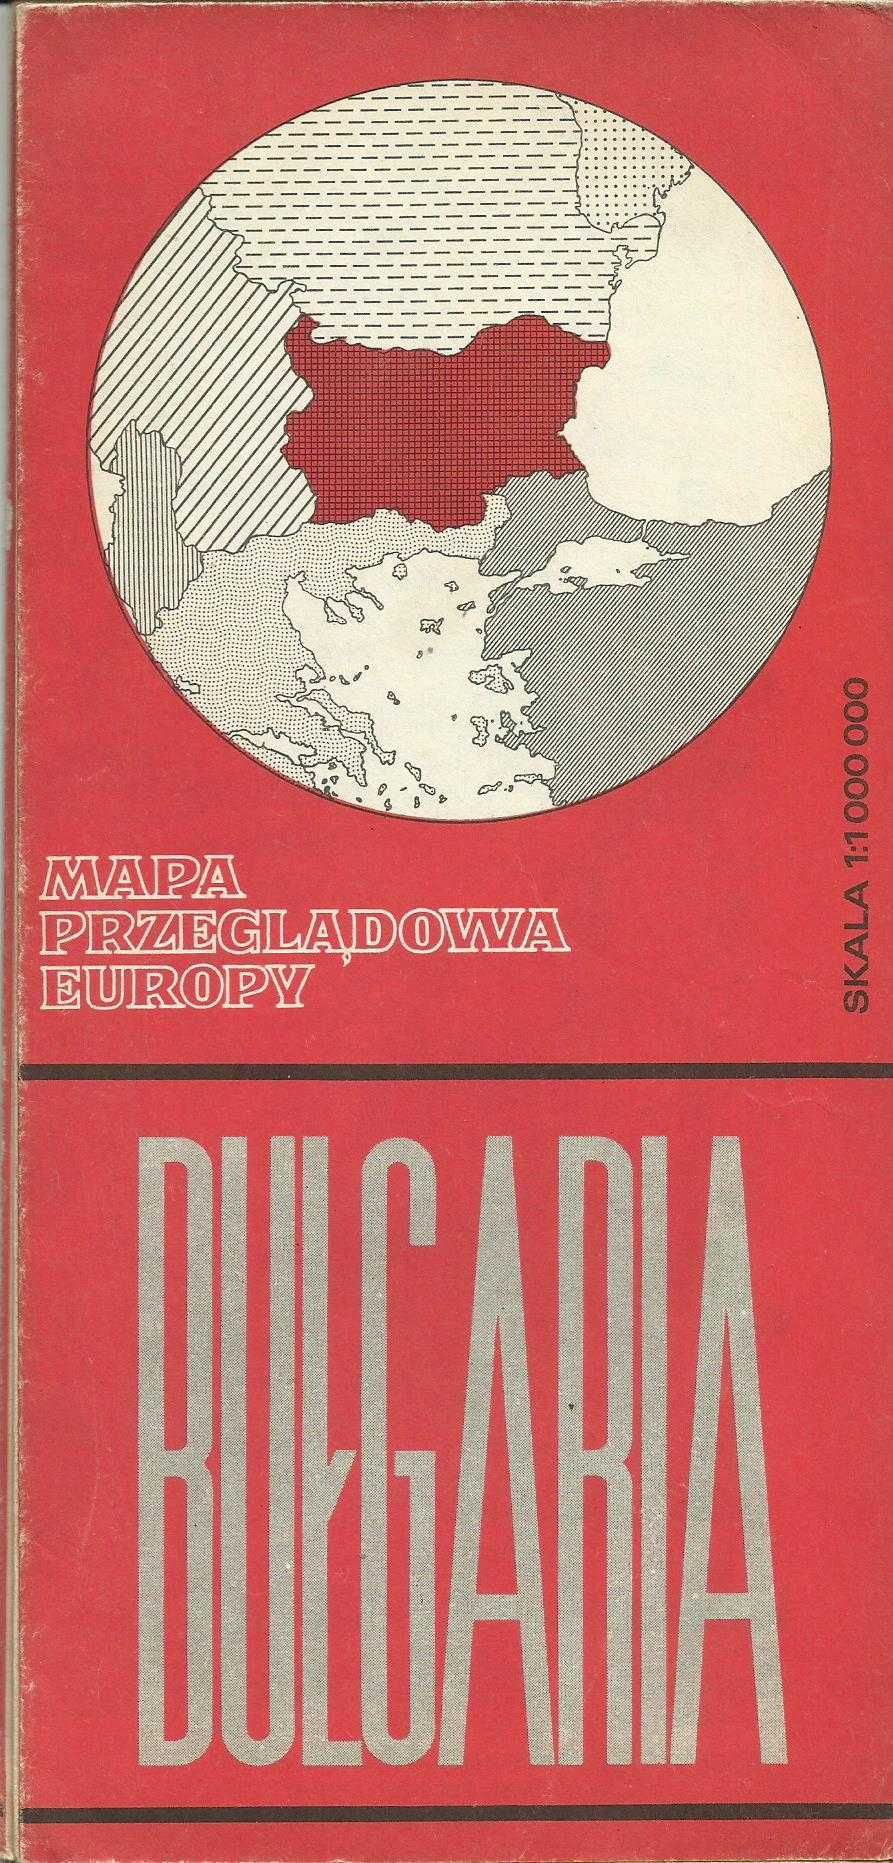 Stare mapy przeglądowe Europy, 1982 / 85 r. PRL